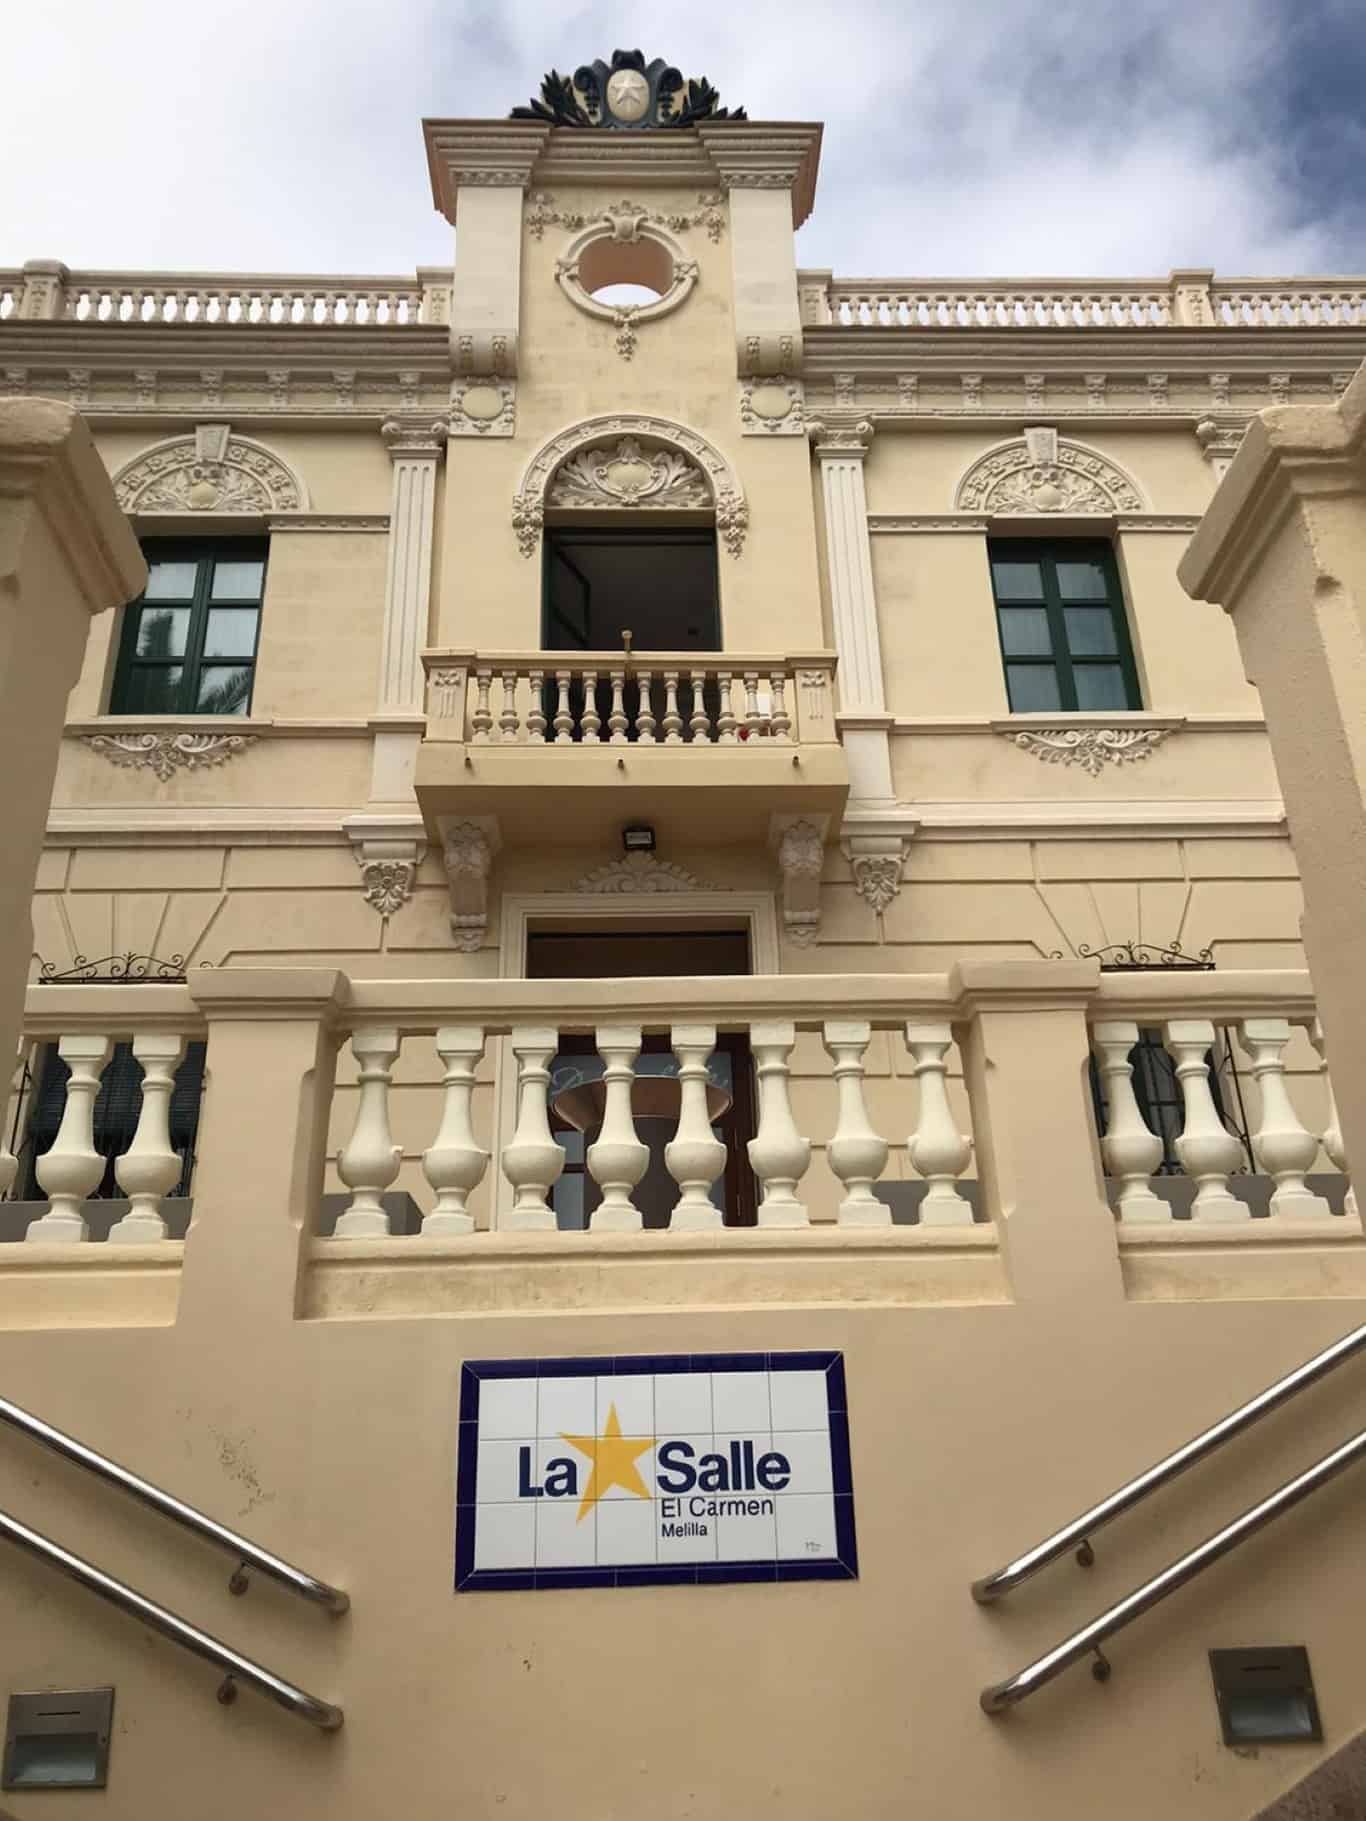 Conociendo patrimonio Colegio La Salle El Carmen (I) – Melilla Monumental